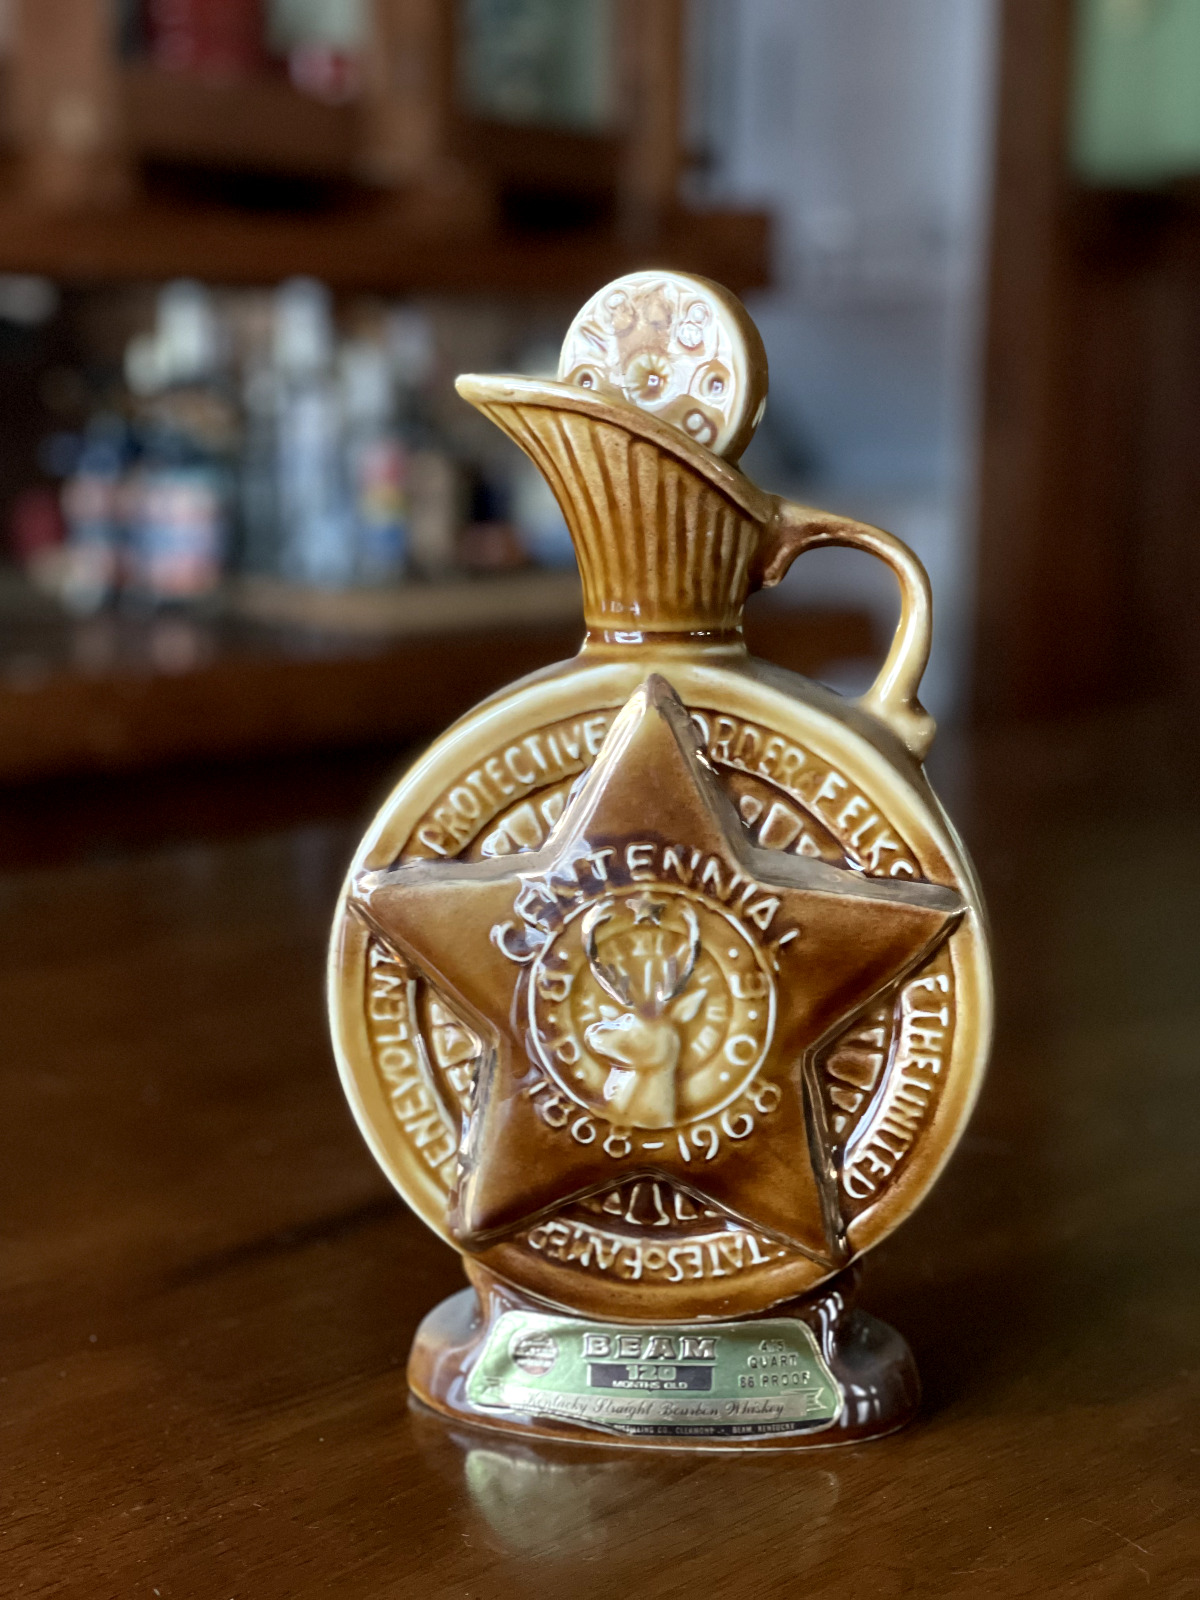 Vintage 1968 Jim Beam Whisky Bourbon Bottle, BPOE Elks Centennial 1868 Decanter